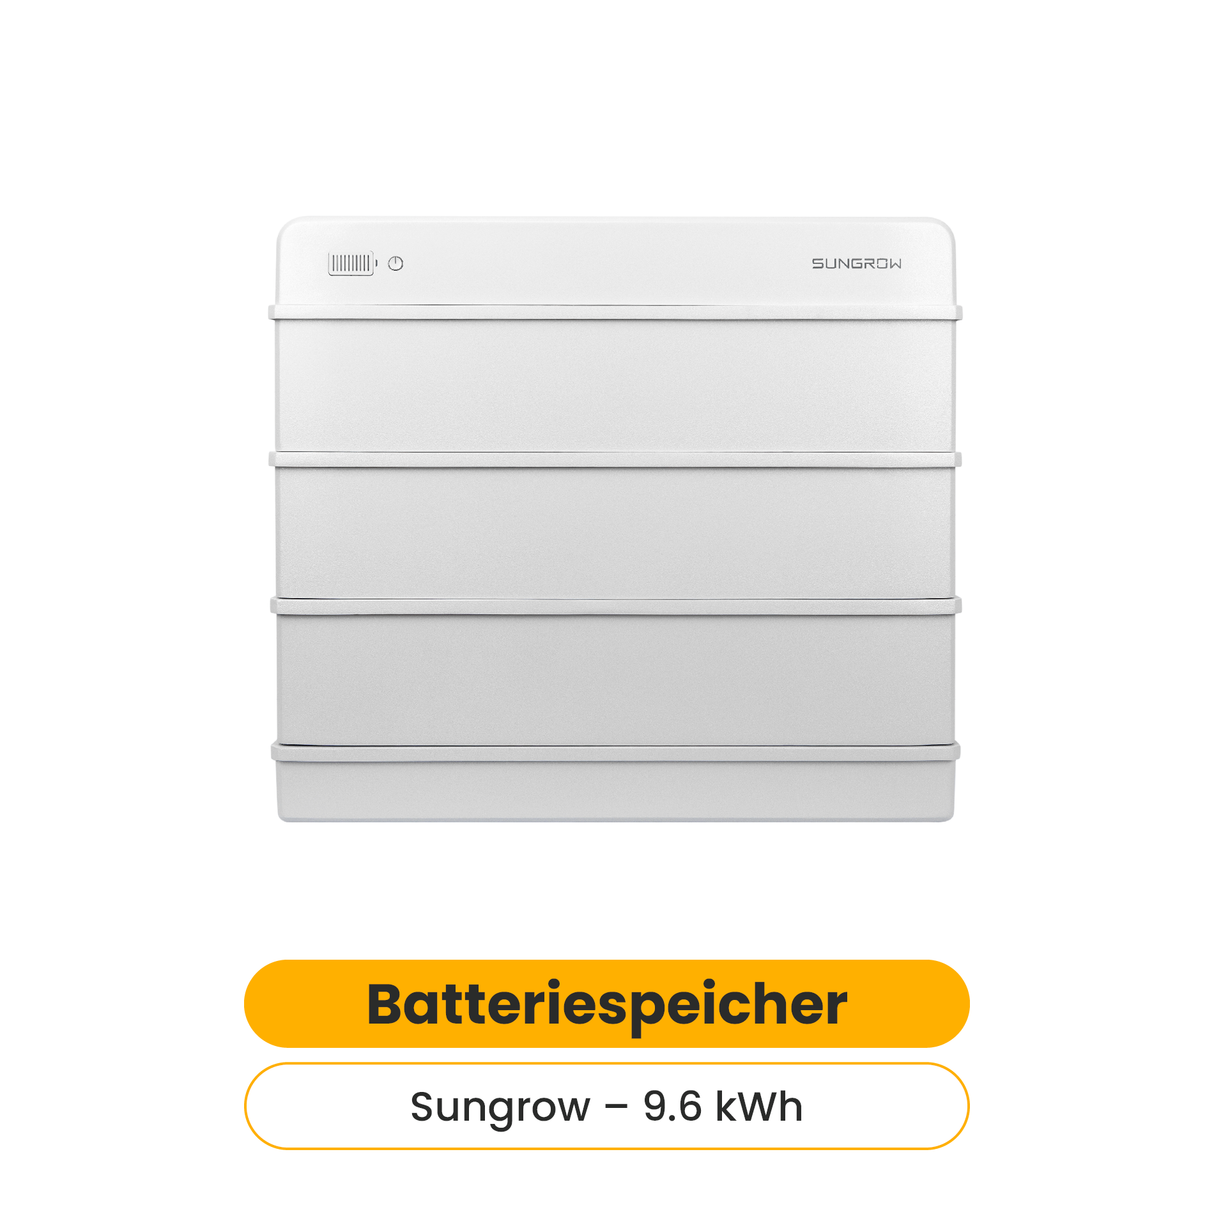 Sungrow Batteriespeicher SBR096 9.6 kWh